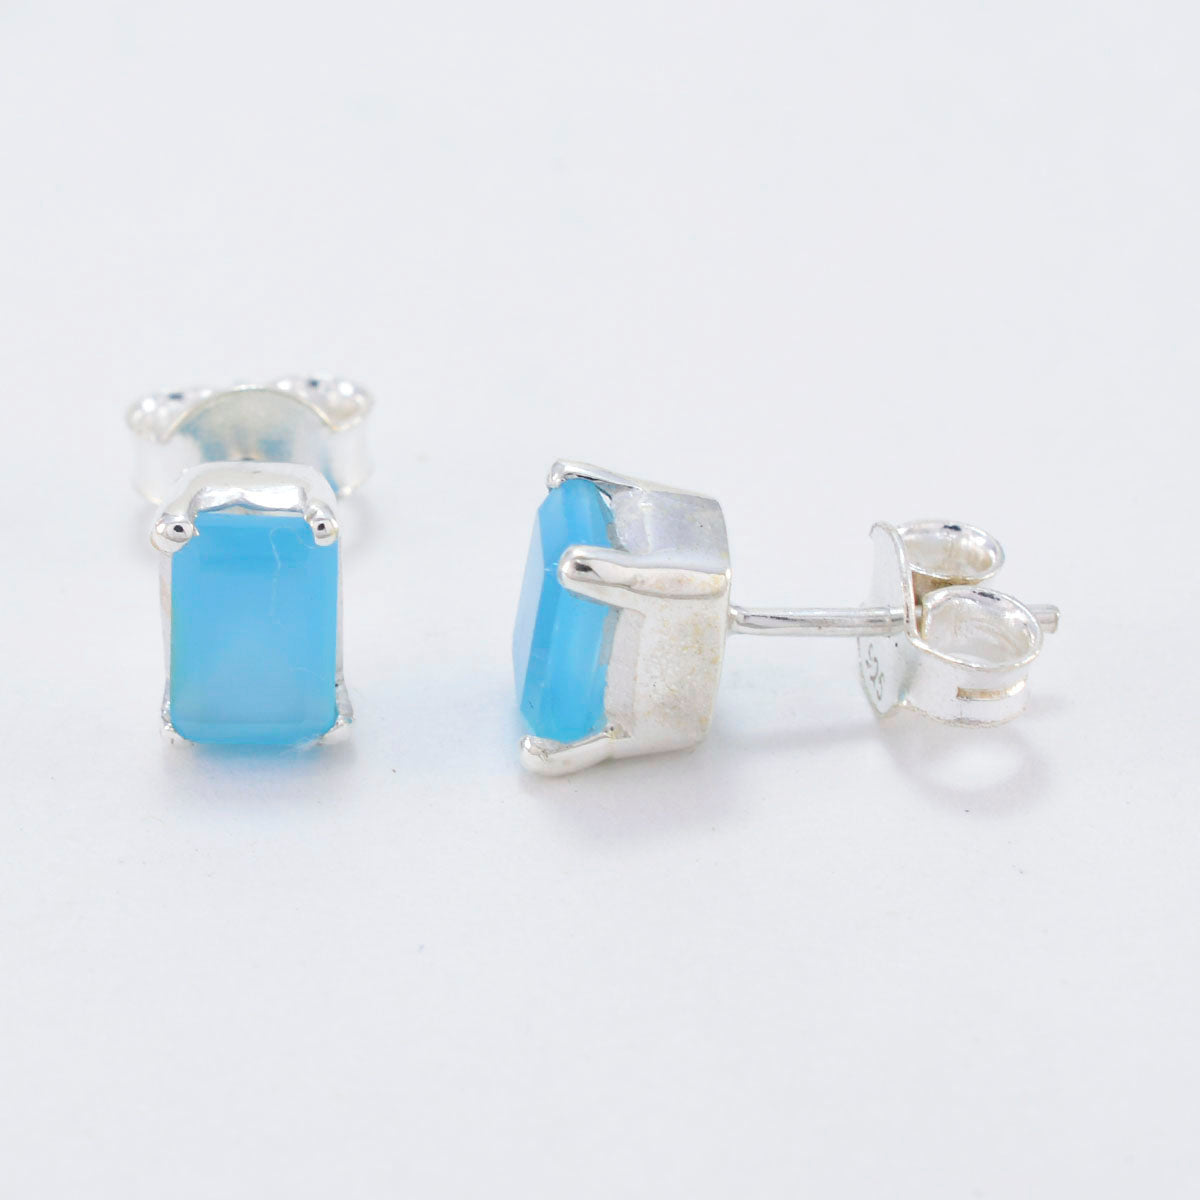 Riyo Winsome 925 Sterling Silver Earring For Sister Blue Chalcedony Earring Bezel Setting Blue Earring Stud Earring